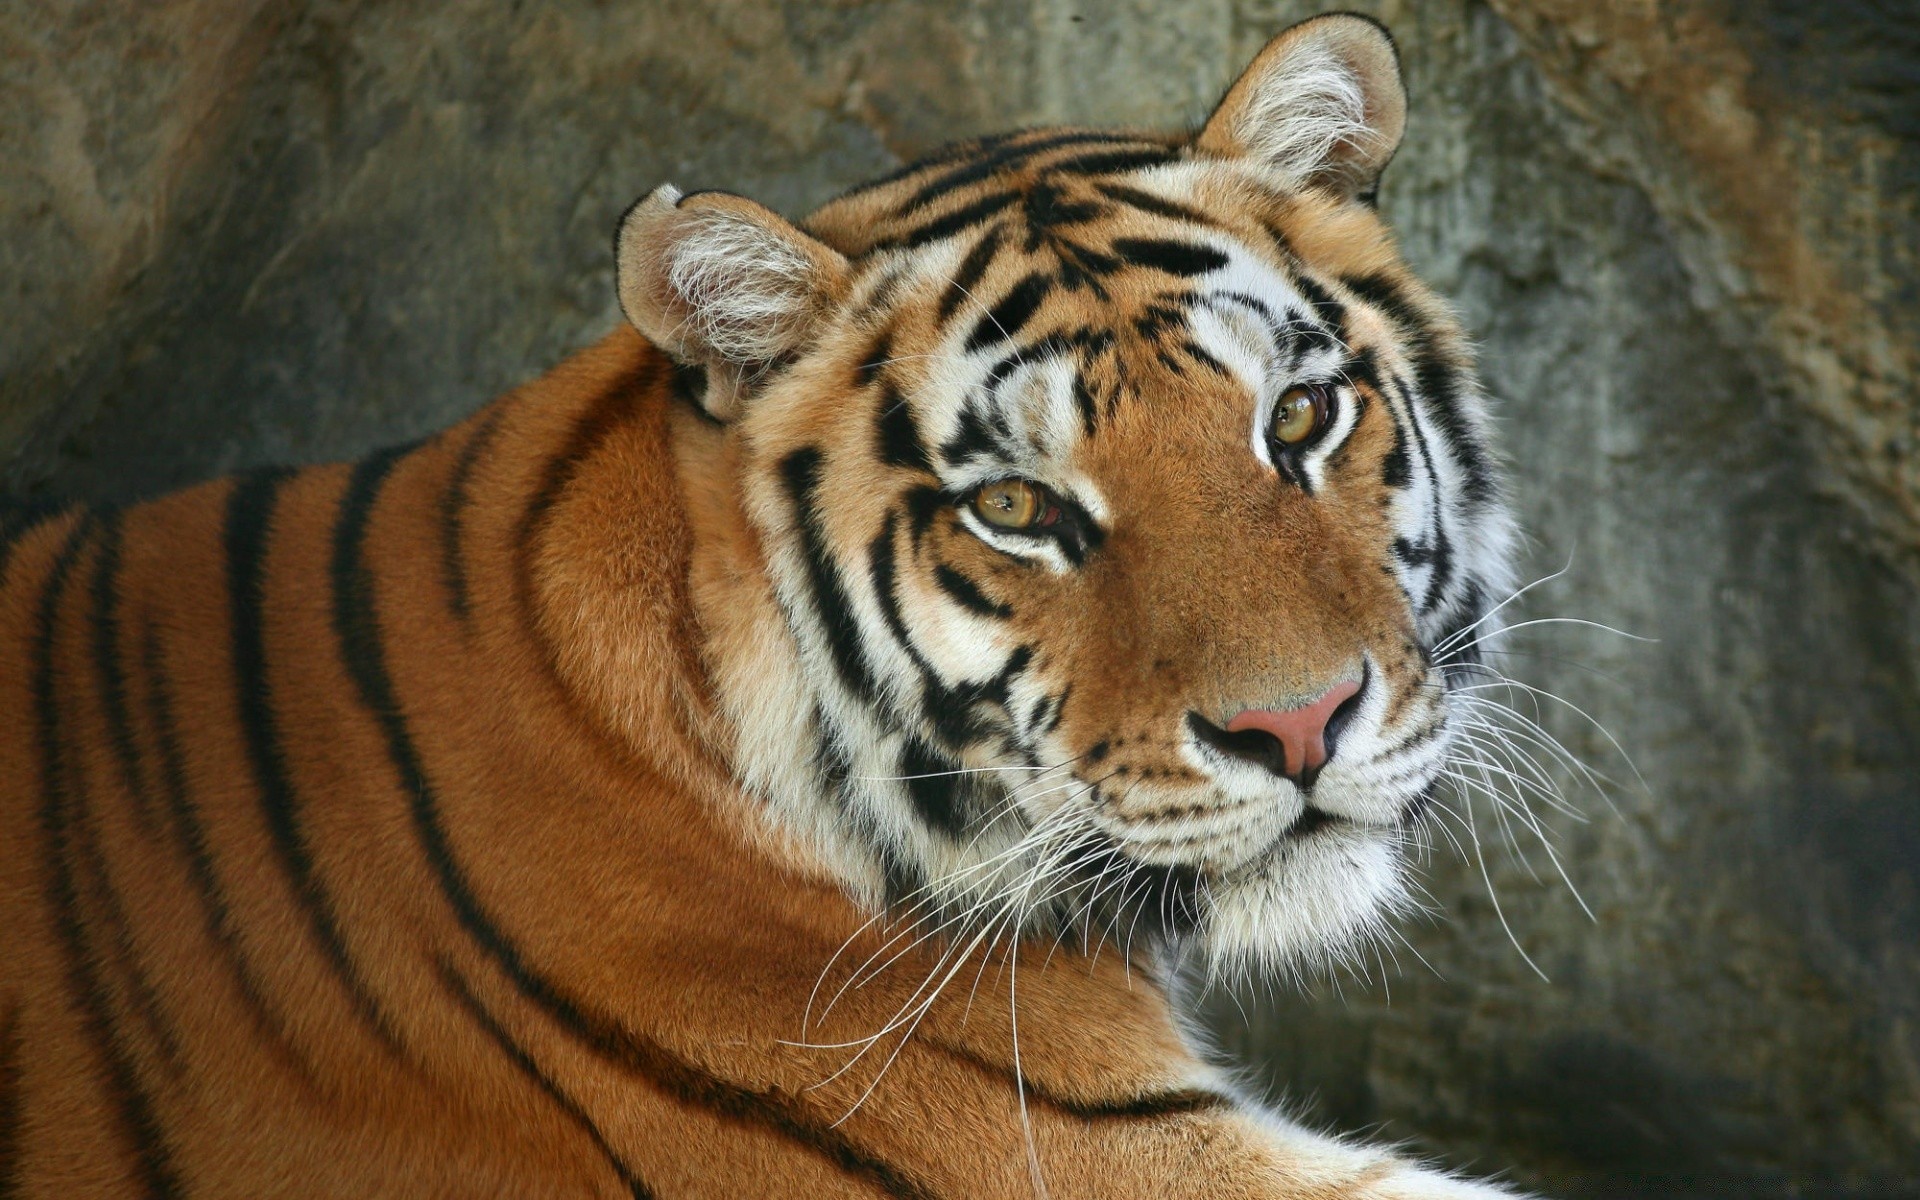 животные тигр млекопитающее дикой природы кошка зоопарк хищник полоса животное охотник джунгли агрессии глядя дикий мясоед большой глава портрет